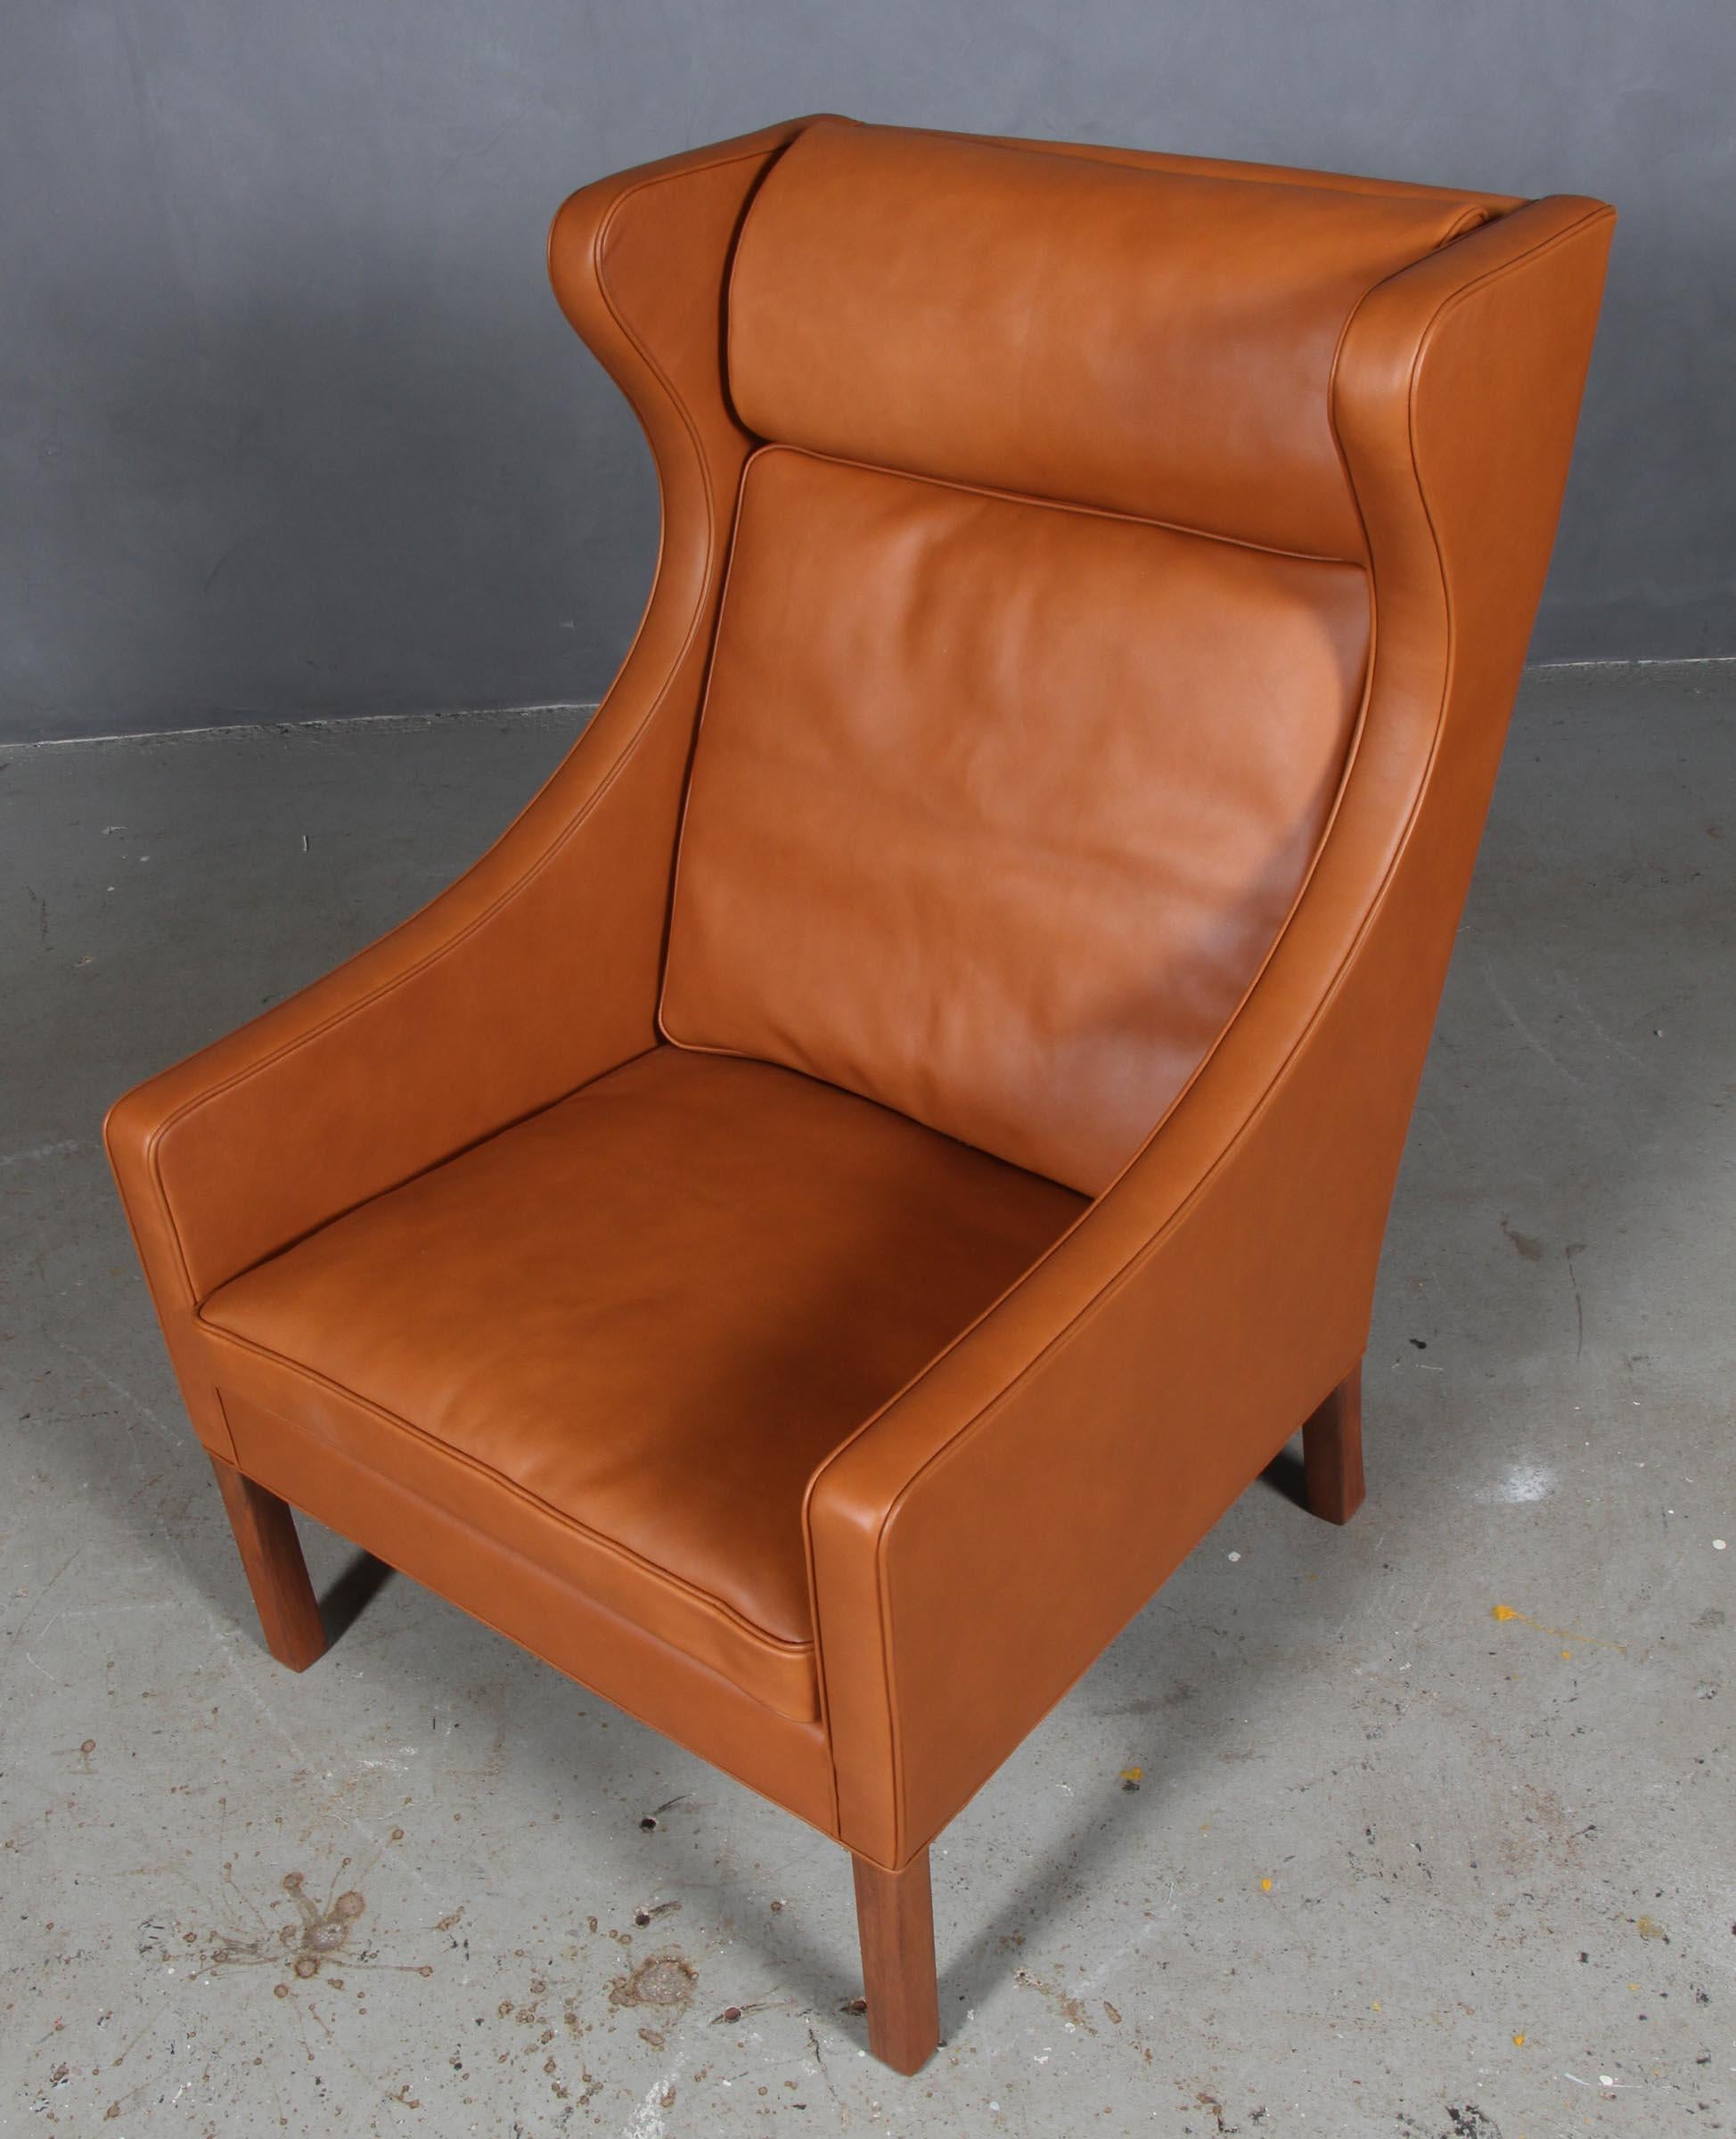 Chaise à oreilles Børge Mogensen nouvellement recouverte de cuir noyer élégant.

Pieds en teck.

Modèle 2204, fabriqué par Fredericia Furniture.